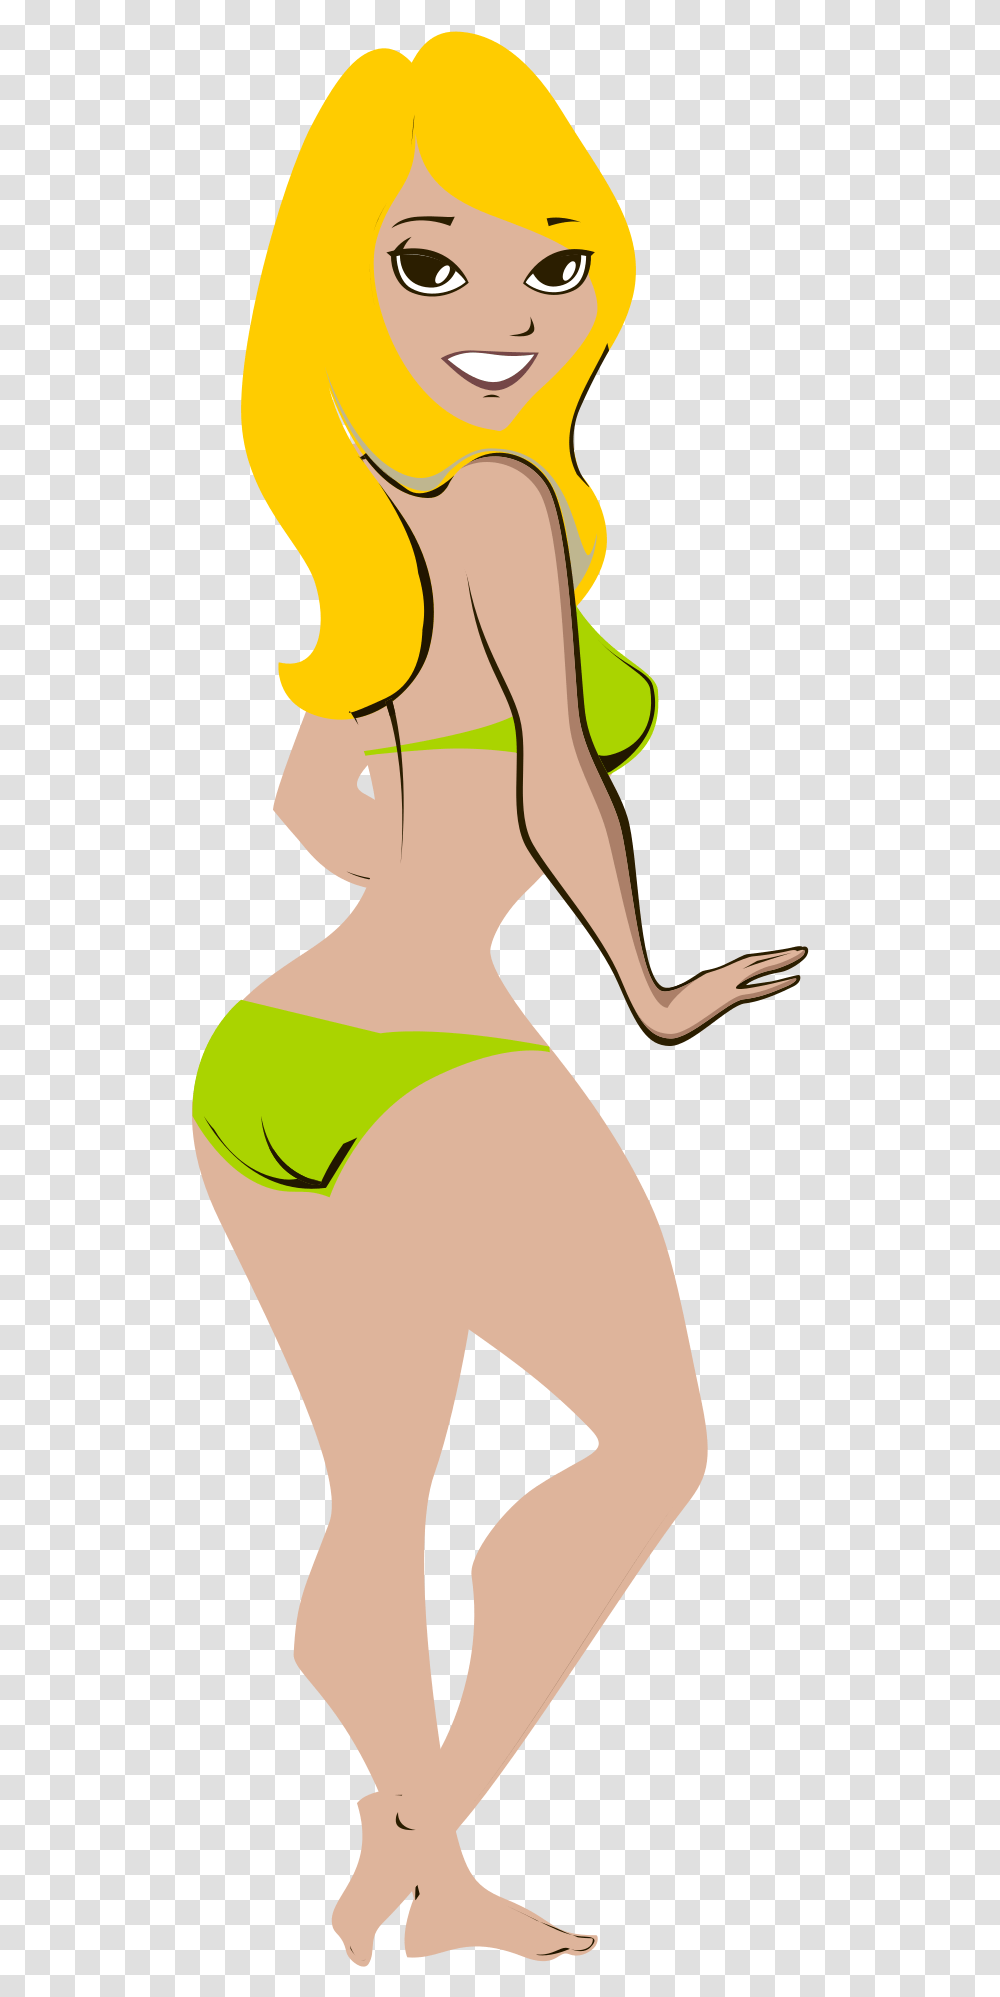 This Free Icons Design Of Bikini Girl Download Hd New Priynka Chopra In Bikini Viral, Apparel, Ball, Swimwear Transparent Png